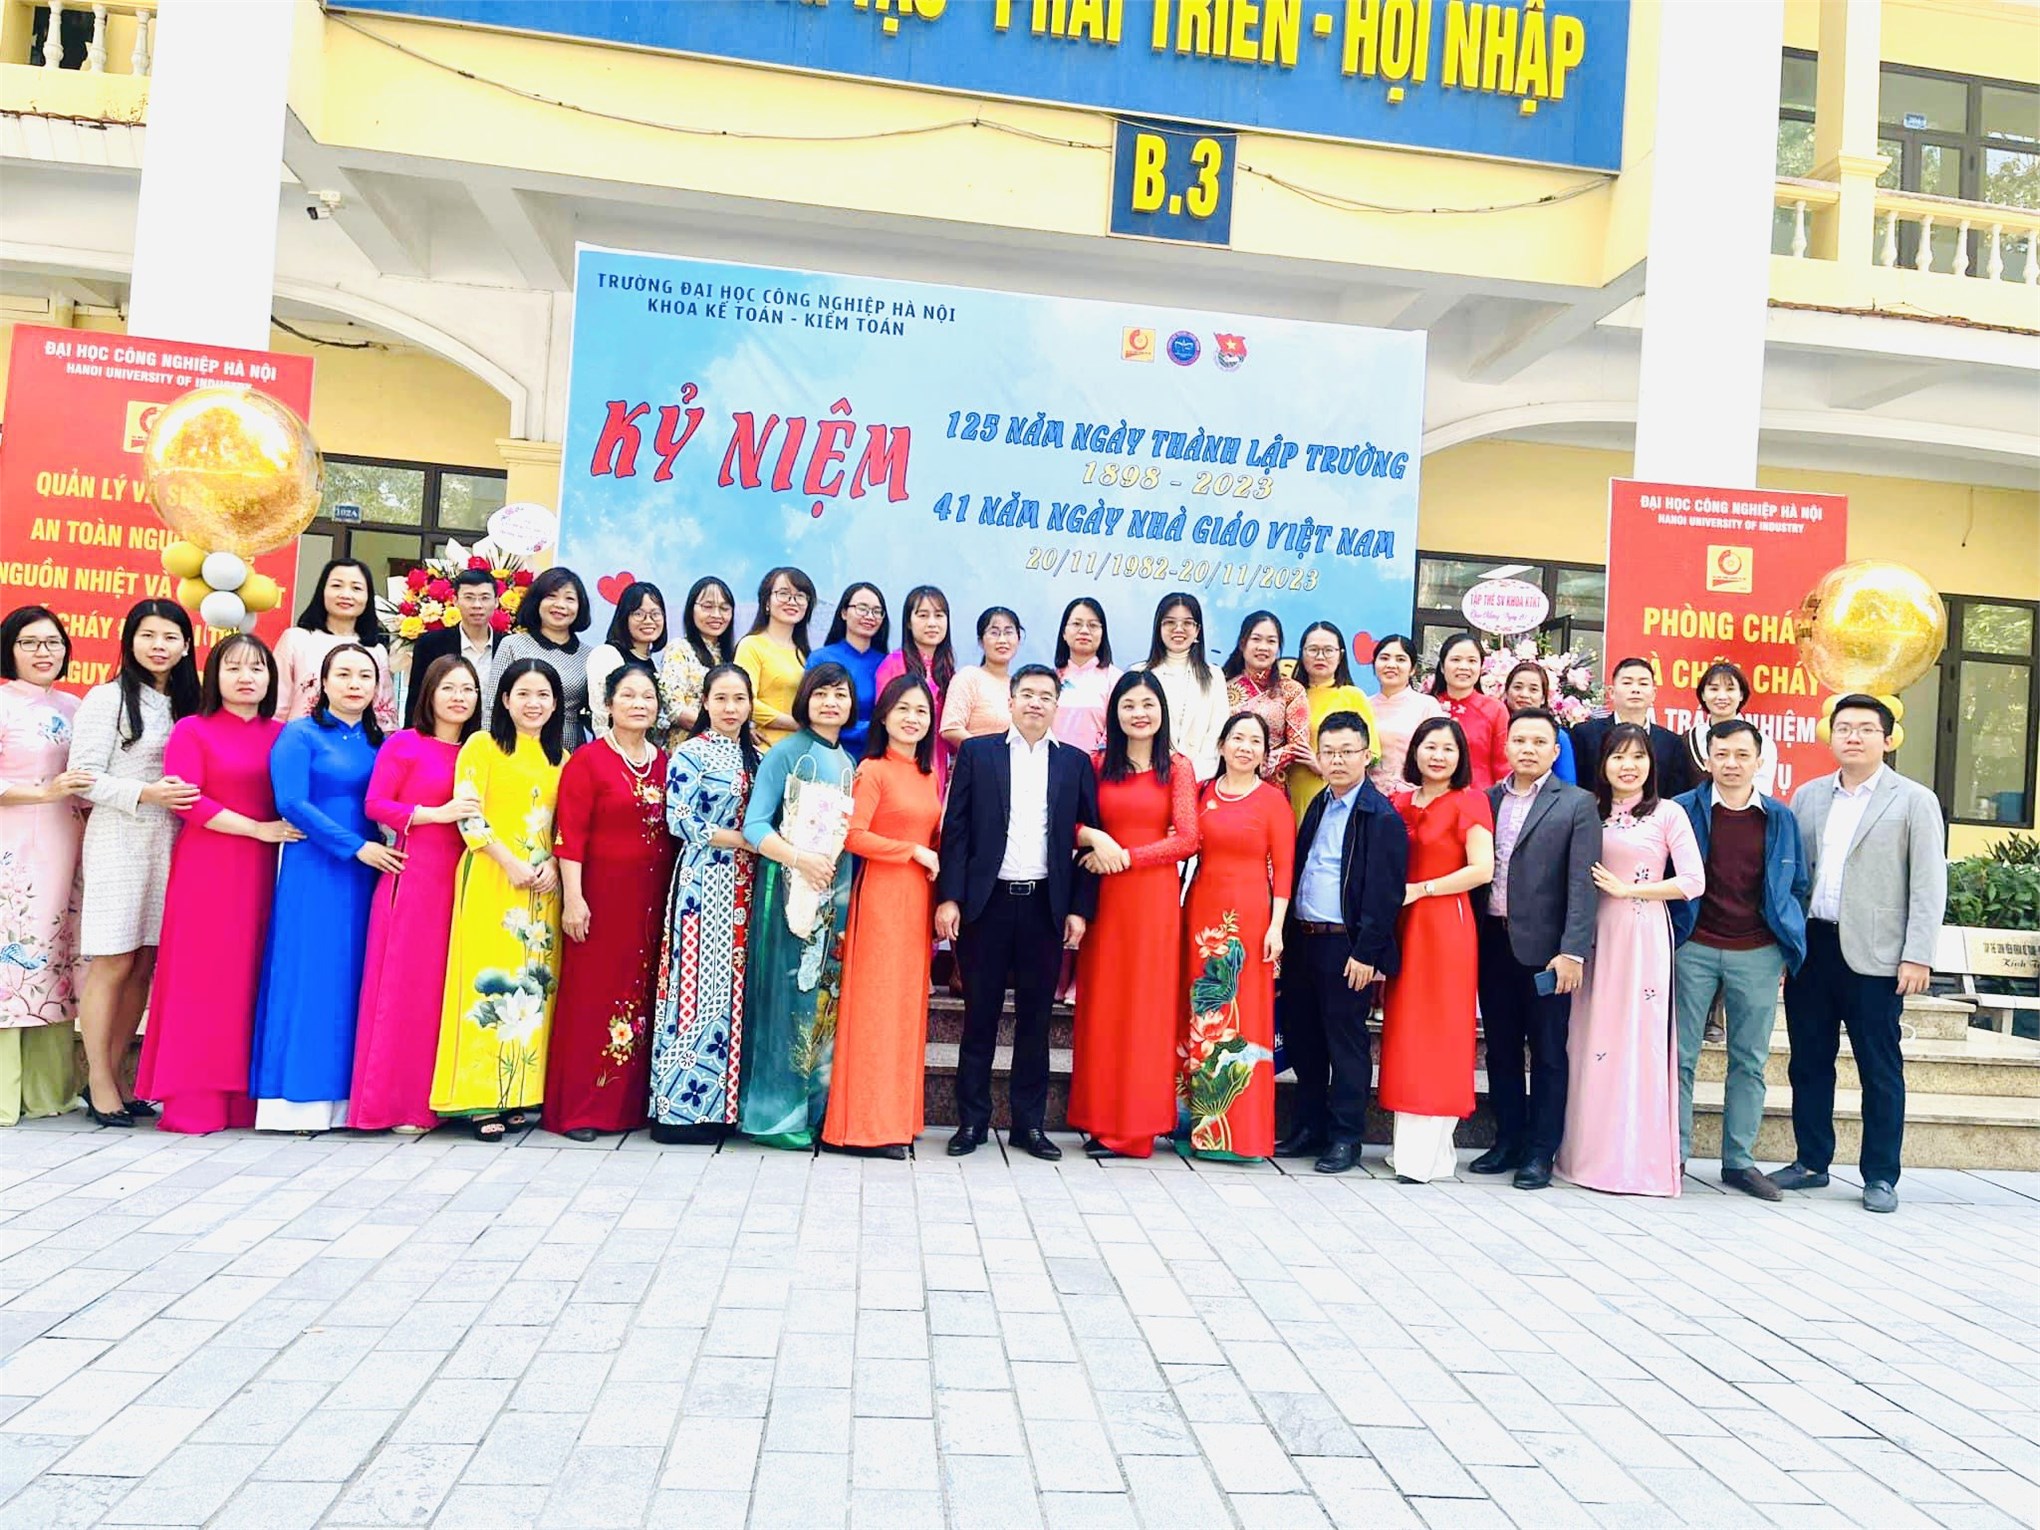 Buổi lễ kỷ niệm 125 năm thành lập trường Đại học Công Nghiệp Hà Nội và chào mừng nhà Nhà giáo Việt Nam với cầu truyền hình trực tiếp từ hội trường Nhà A11 tại đơn vị Khoa Kế toán Kiểm toán ngày 18/11/2023